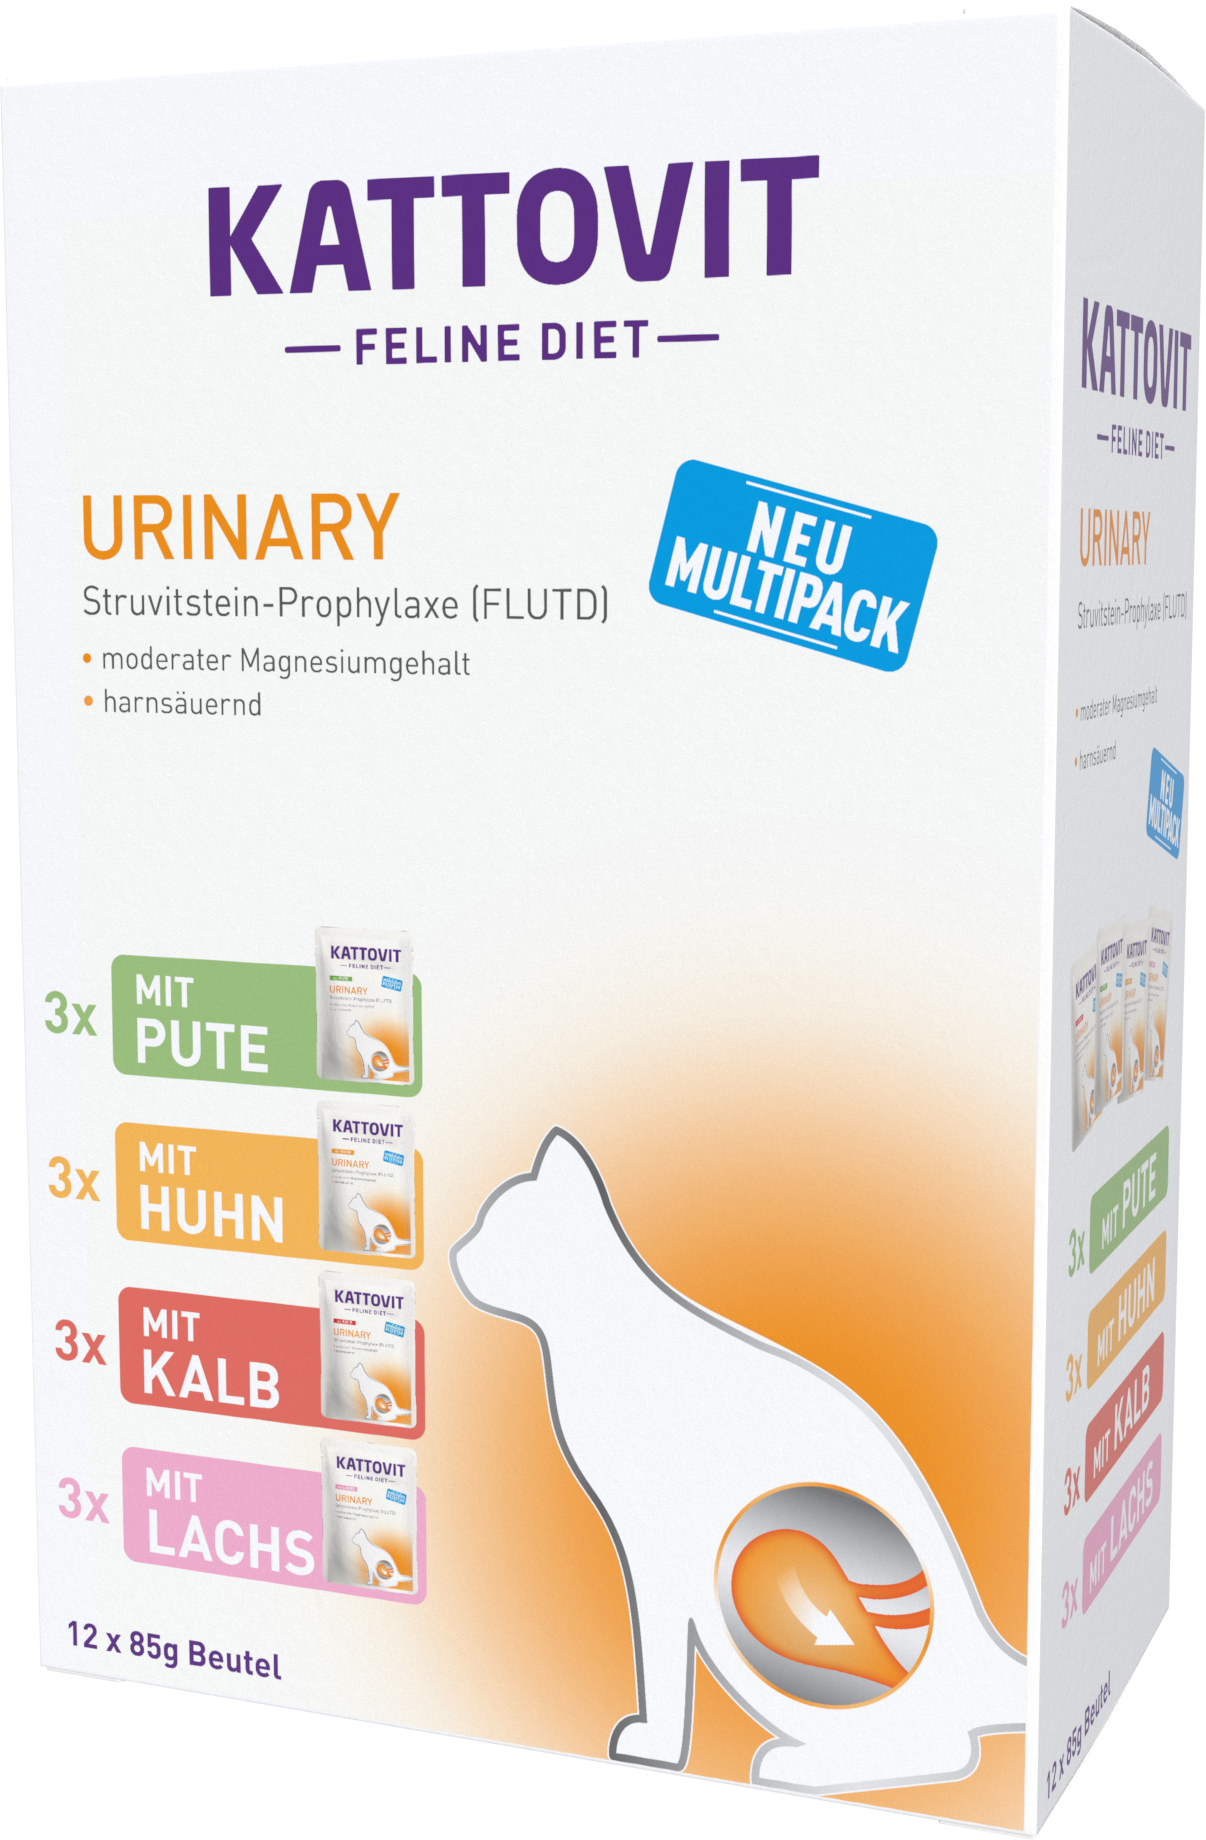 Finnern PB Kattovit Feline Diet Urinary Multipack 12x85g